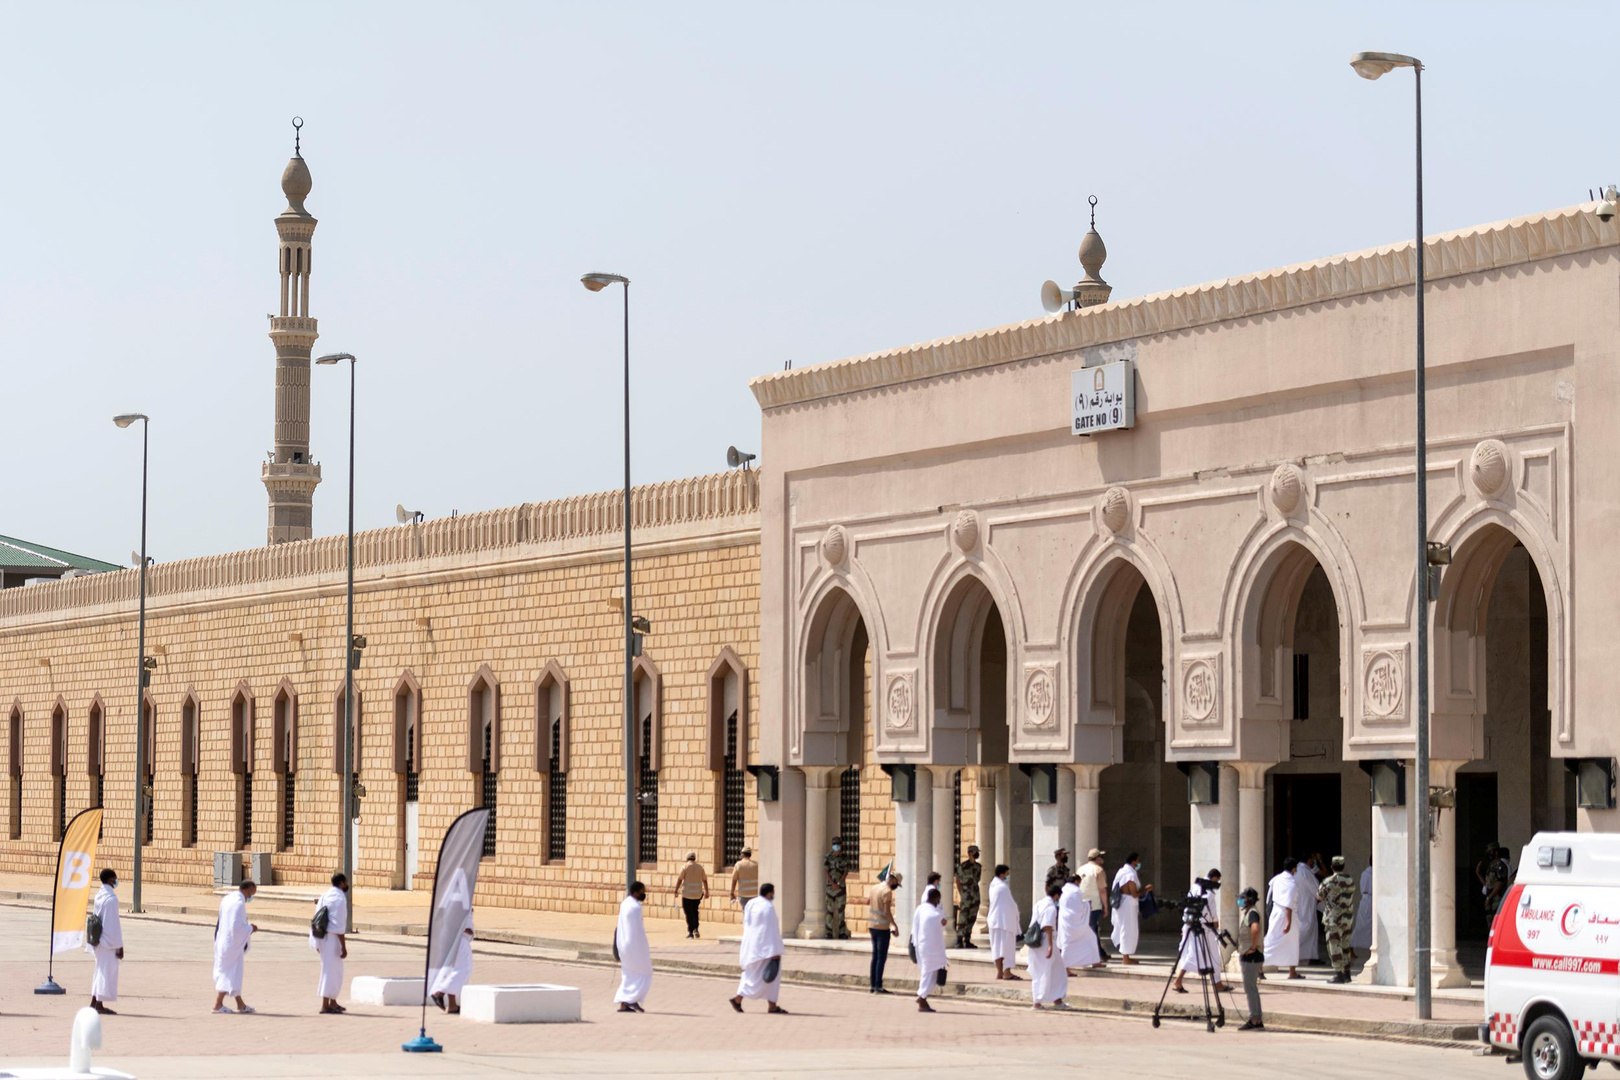 السعودية.. قصر استعمال مكبرات الصوت بالمساجد على الأذان والإقامة وضبطها بثلث درجة الجهاز